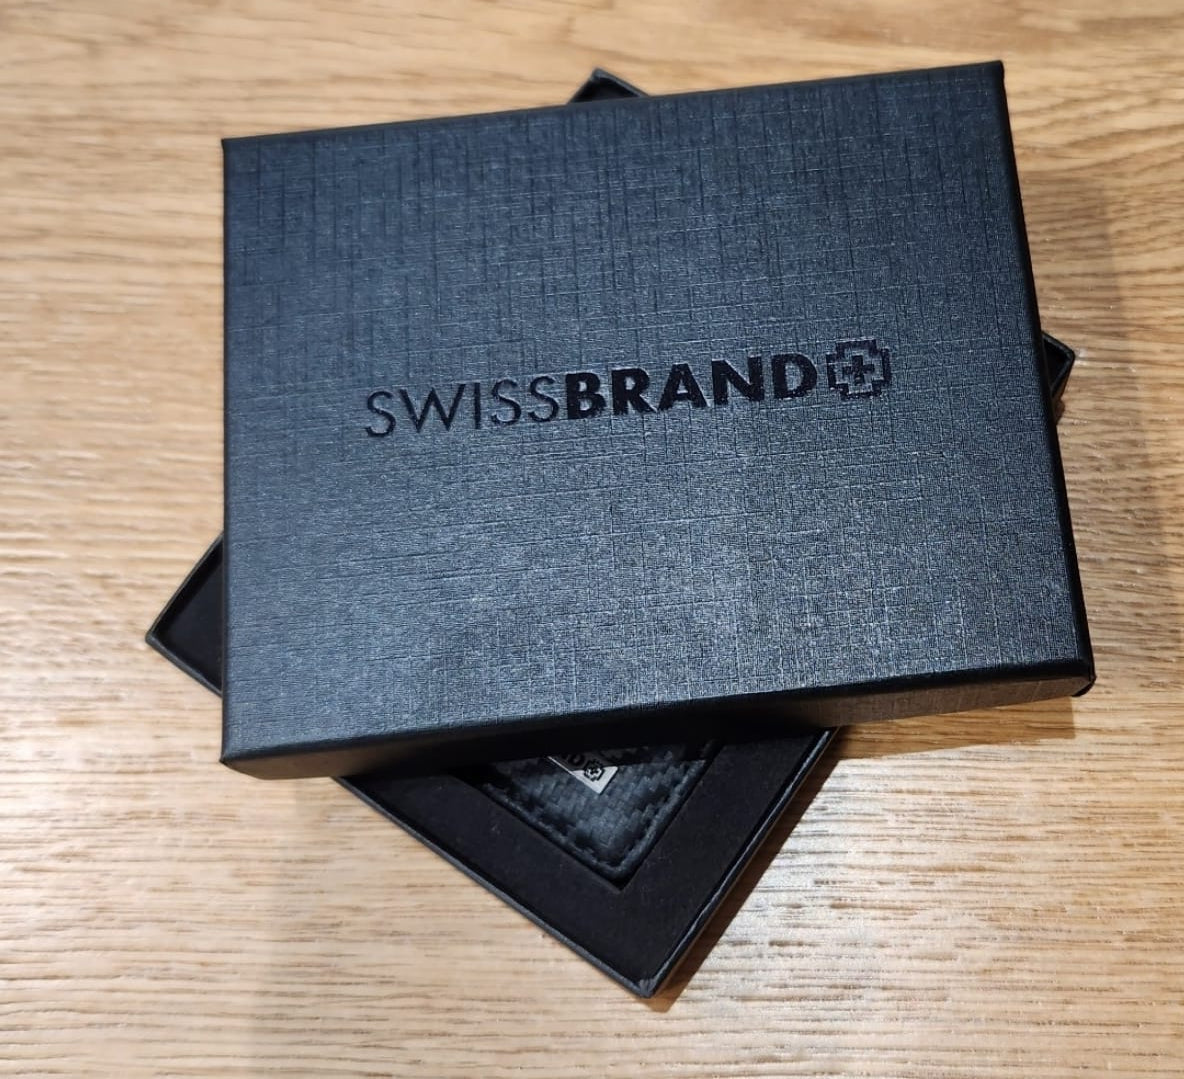 ✮מותג שוויצרי מקורי✮ ארנק עור קליפ מבית המותג SwissBrand דגם Monaco Clip